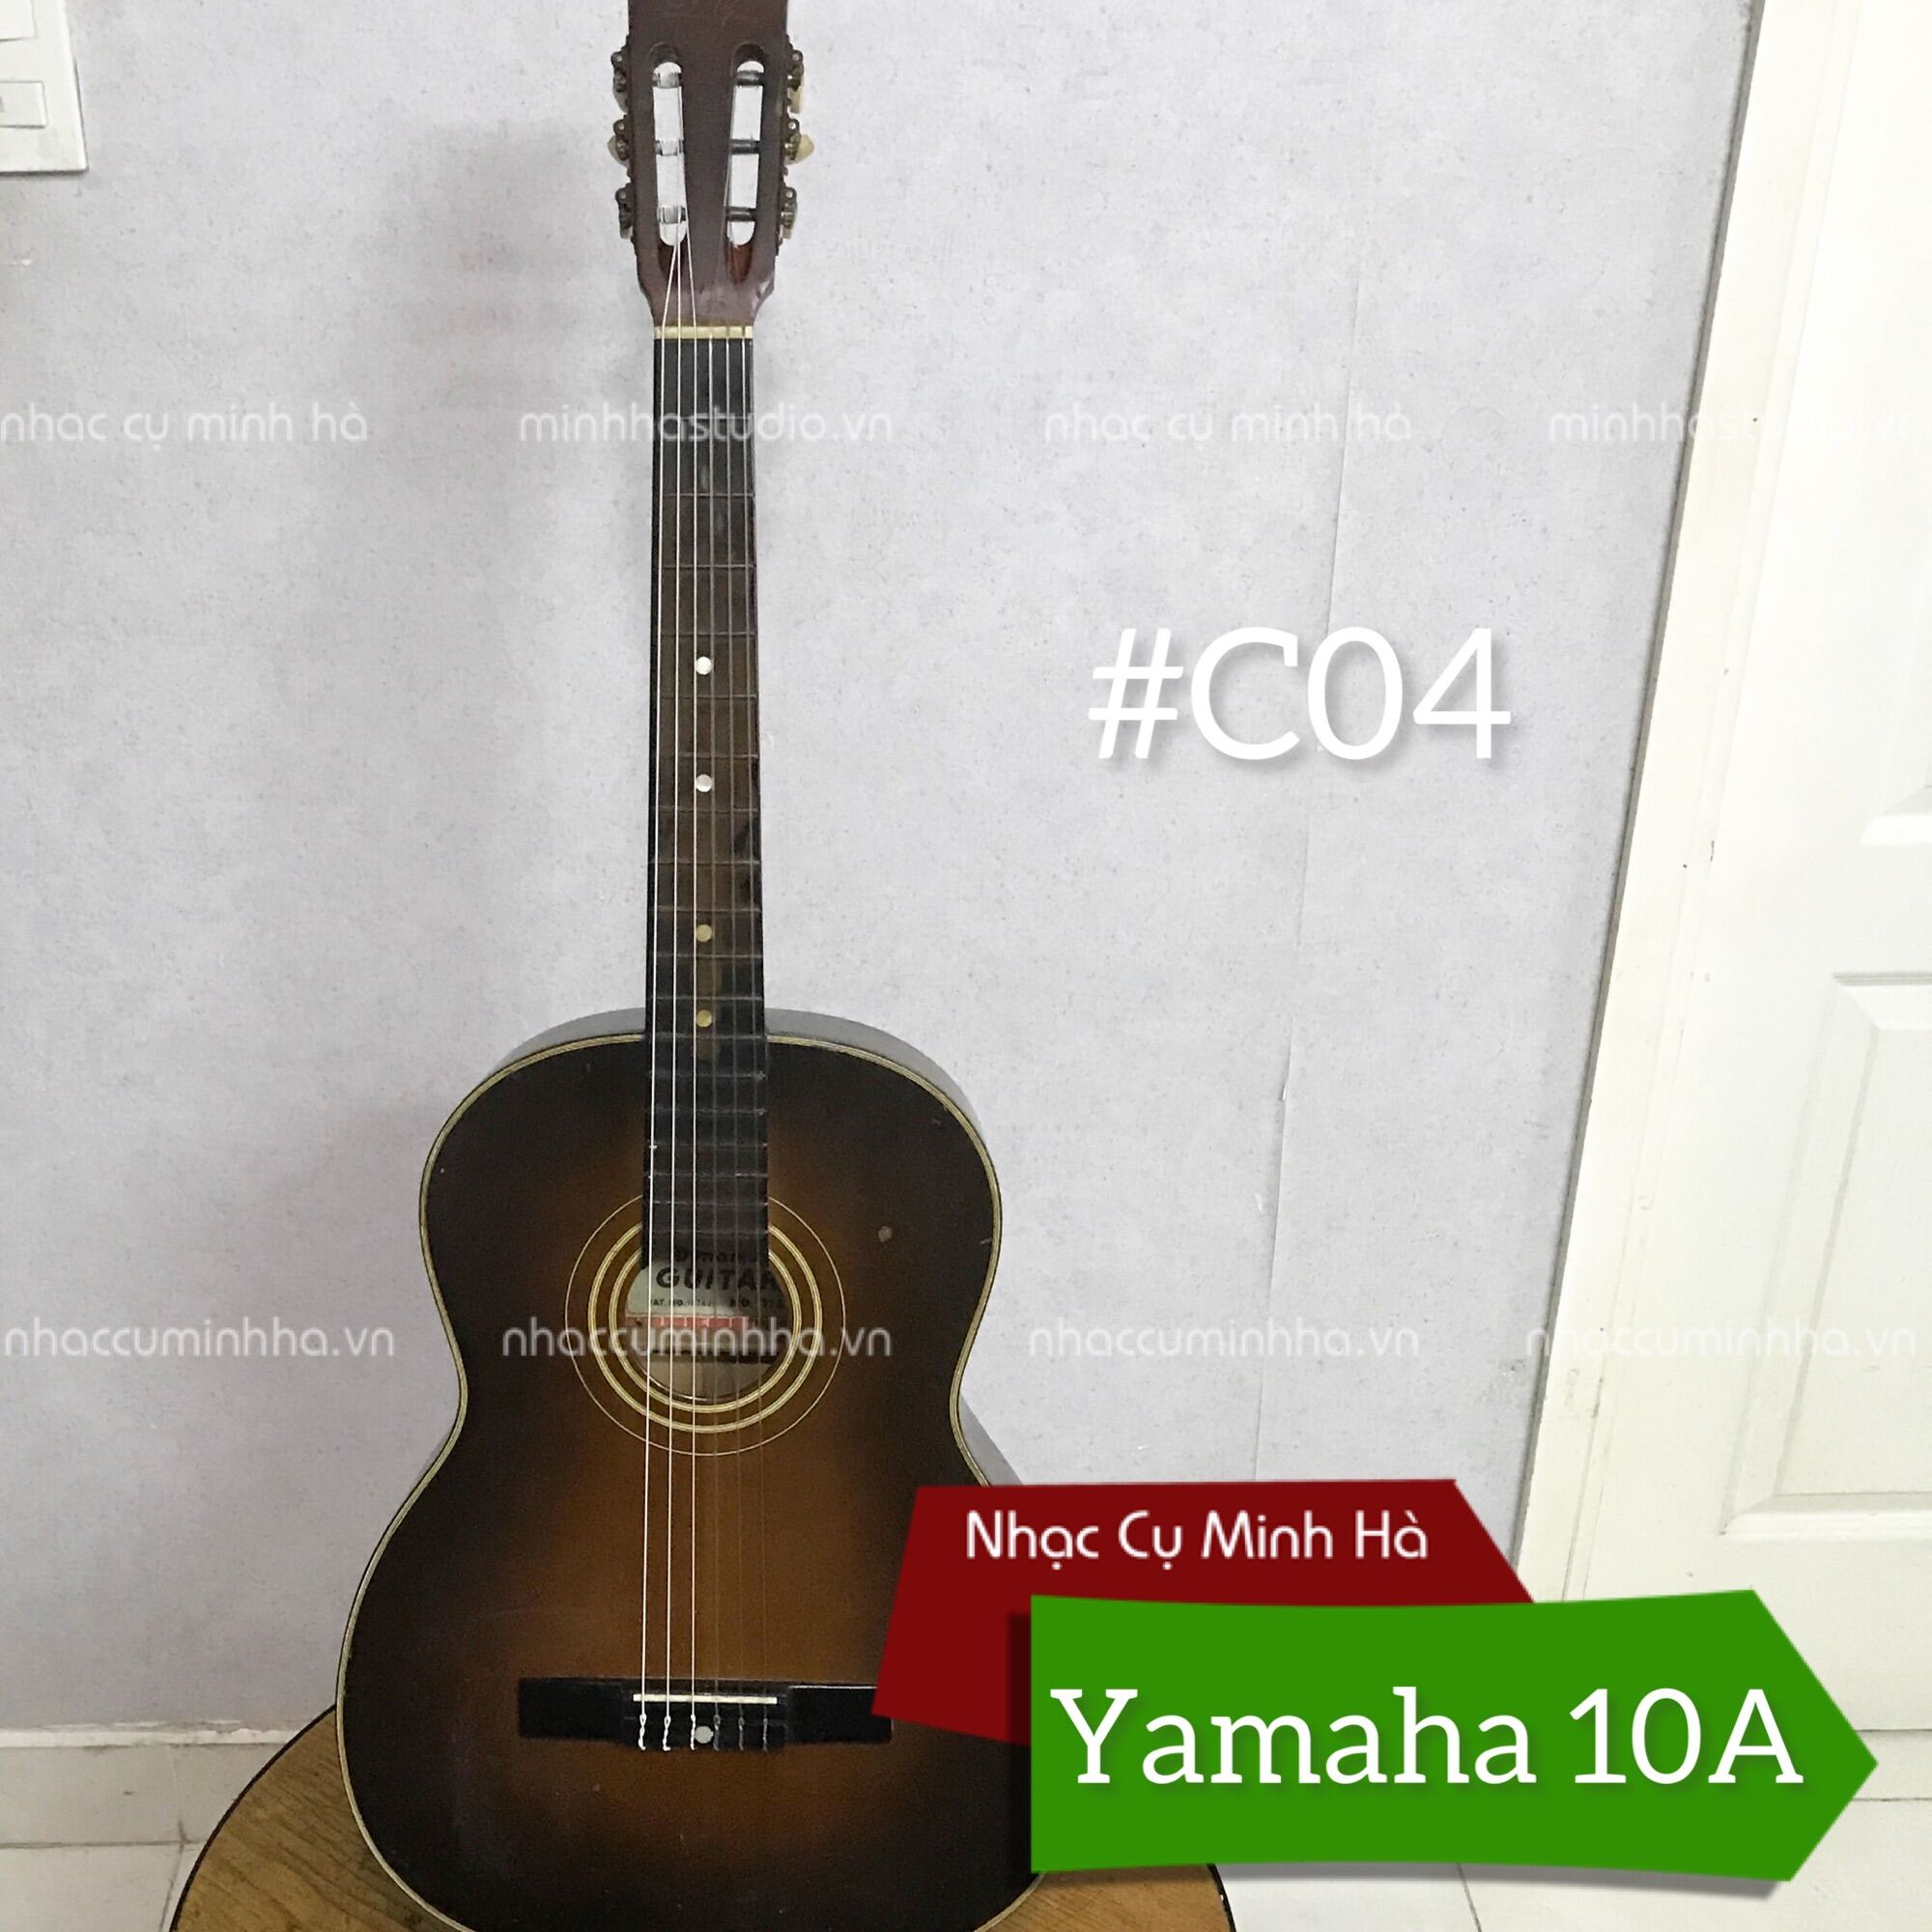 Guitar Classic C04 Yamaha N10 giá rẻ dành cho người đam mê mới tập